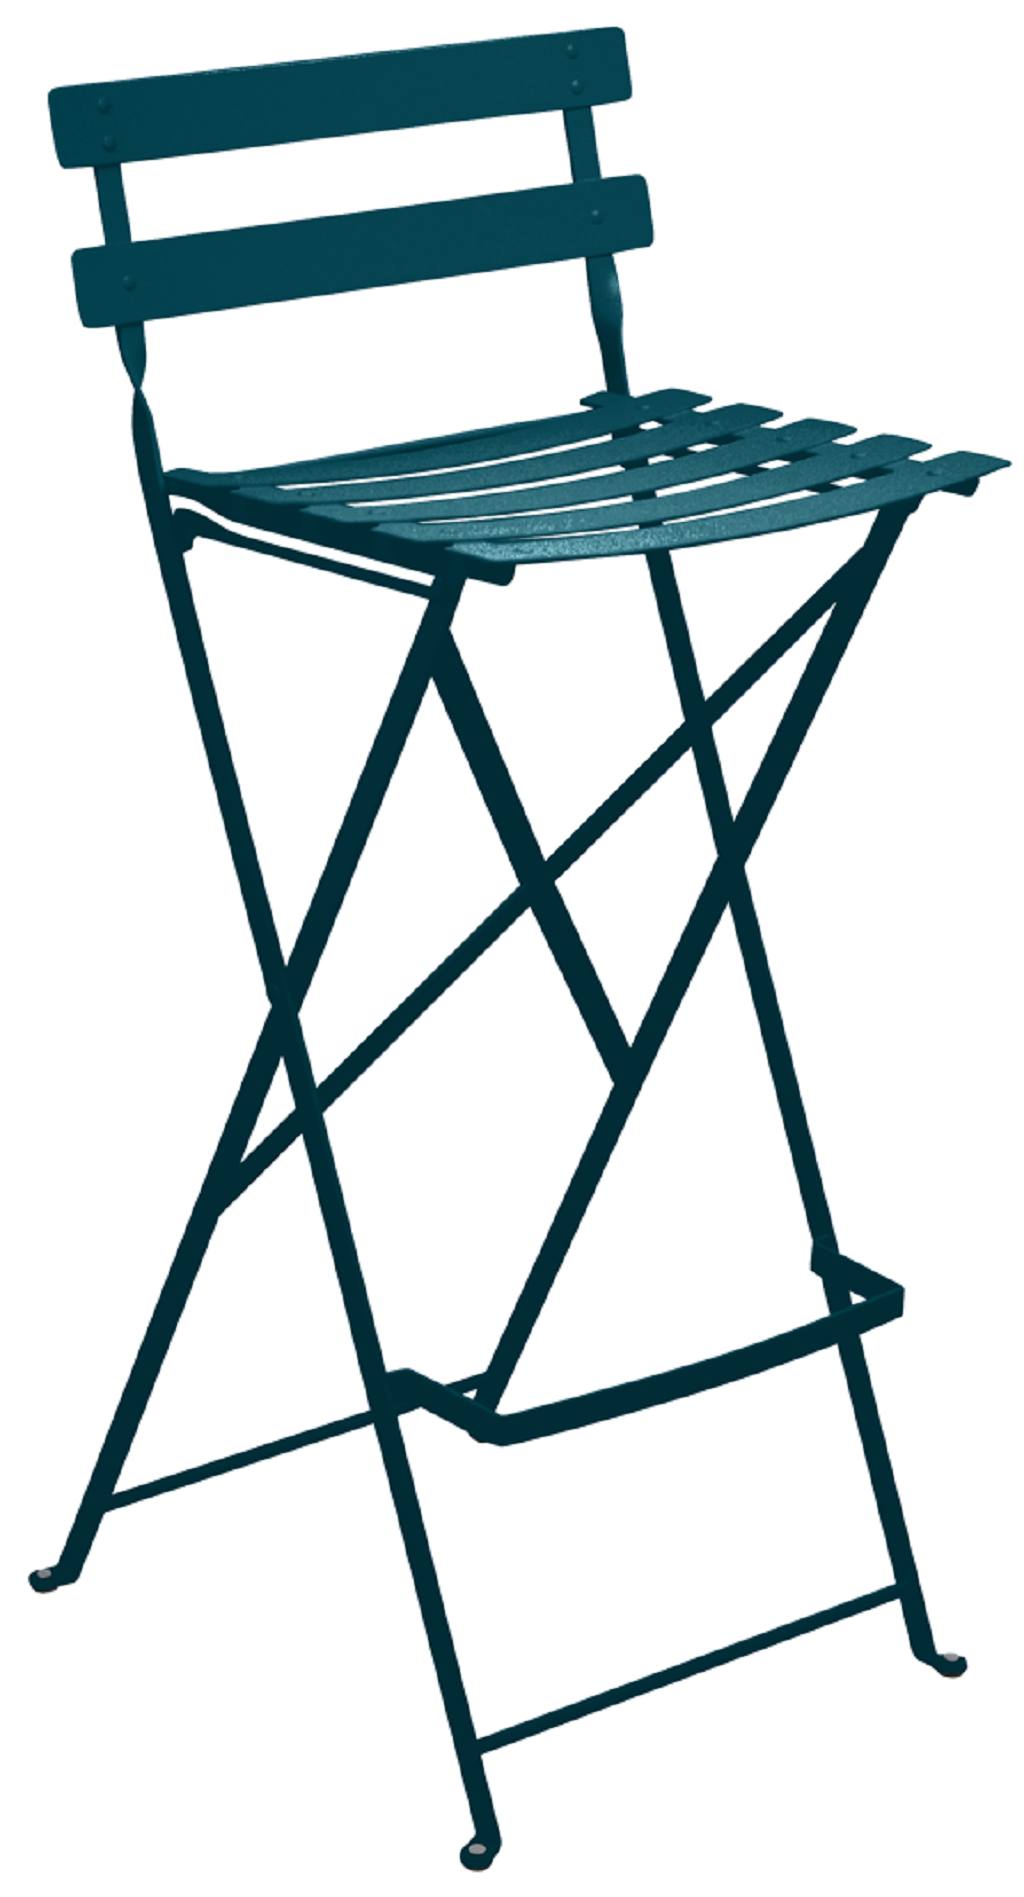 Modrá kovová skládací barová židle Fermob Bistro Fermob